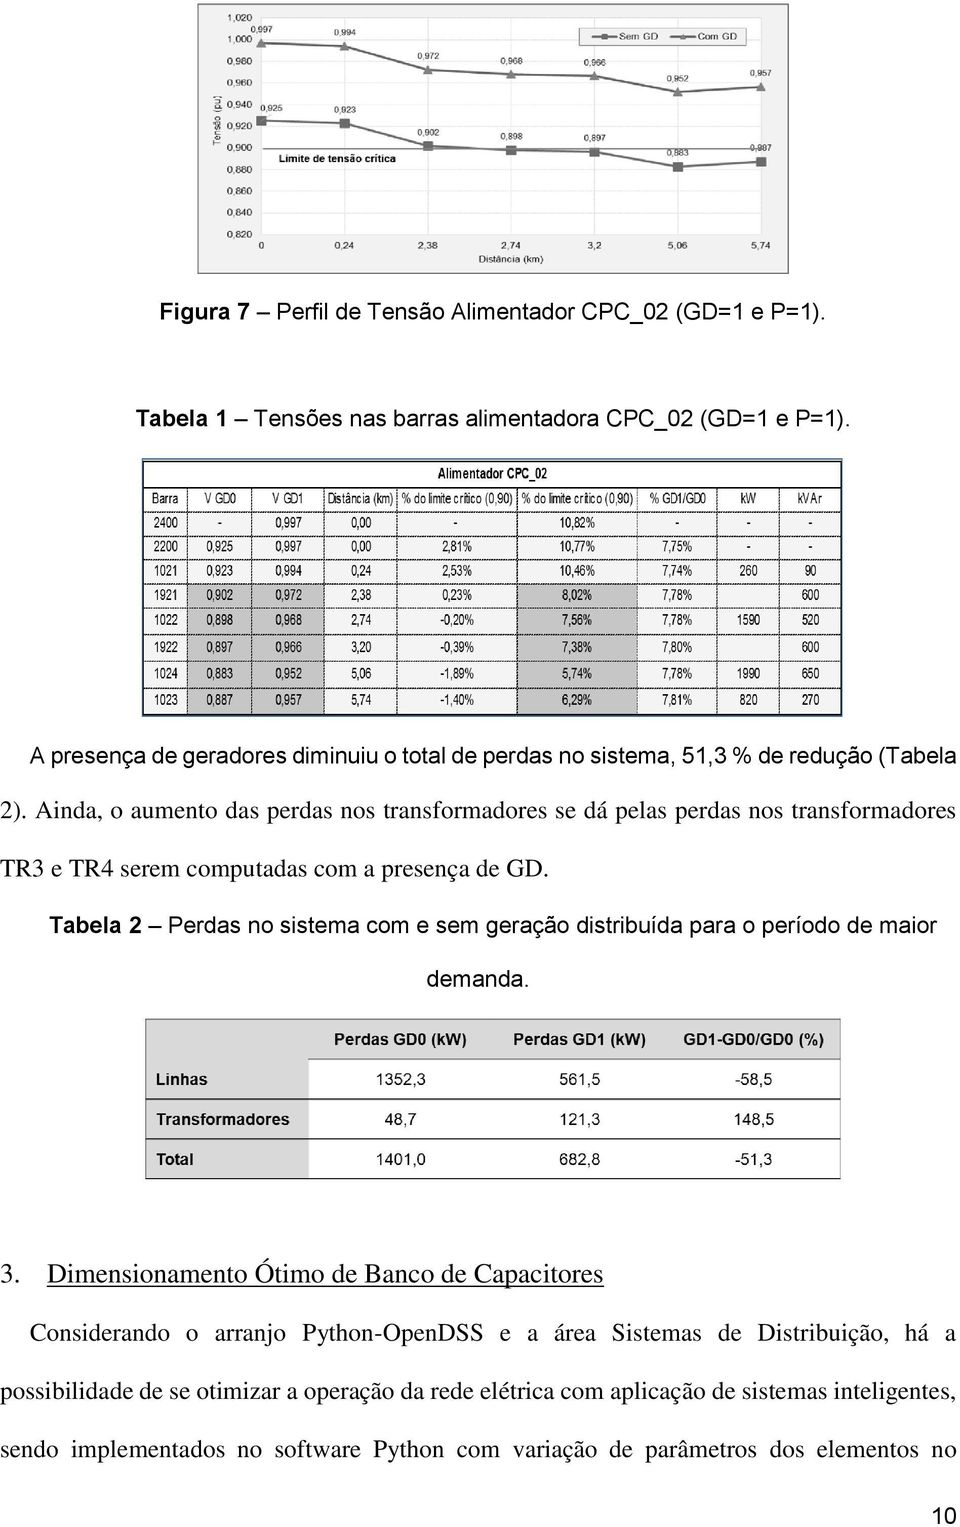 Ainda, o aumento das perdas nos transformadores se dá pelas perdas nos transformadores TR3 e TR4 serem computadas com a presença de GD.